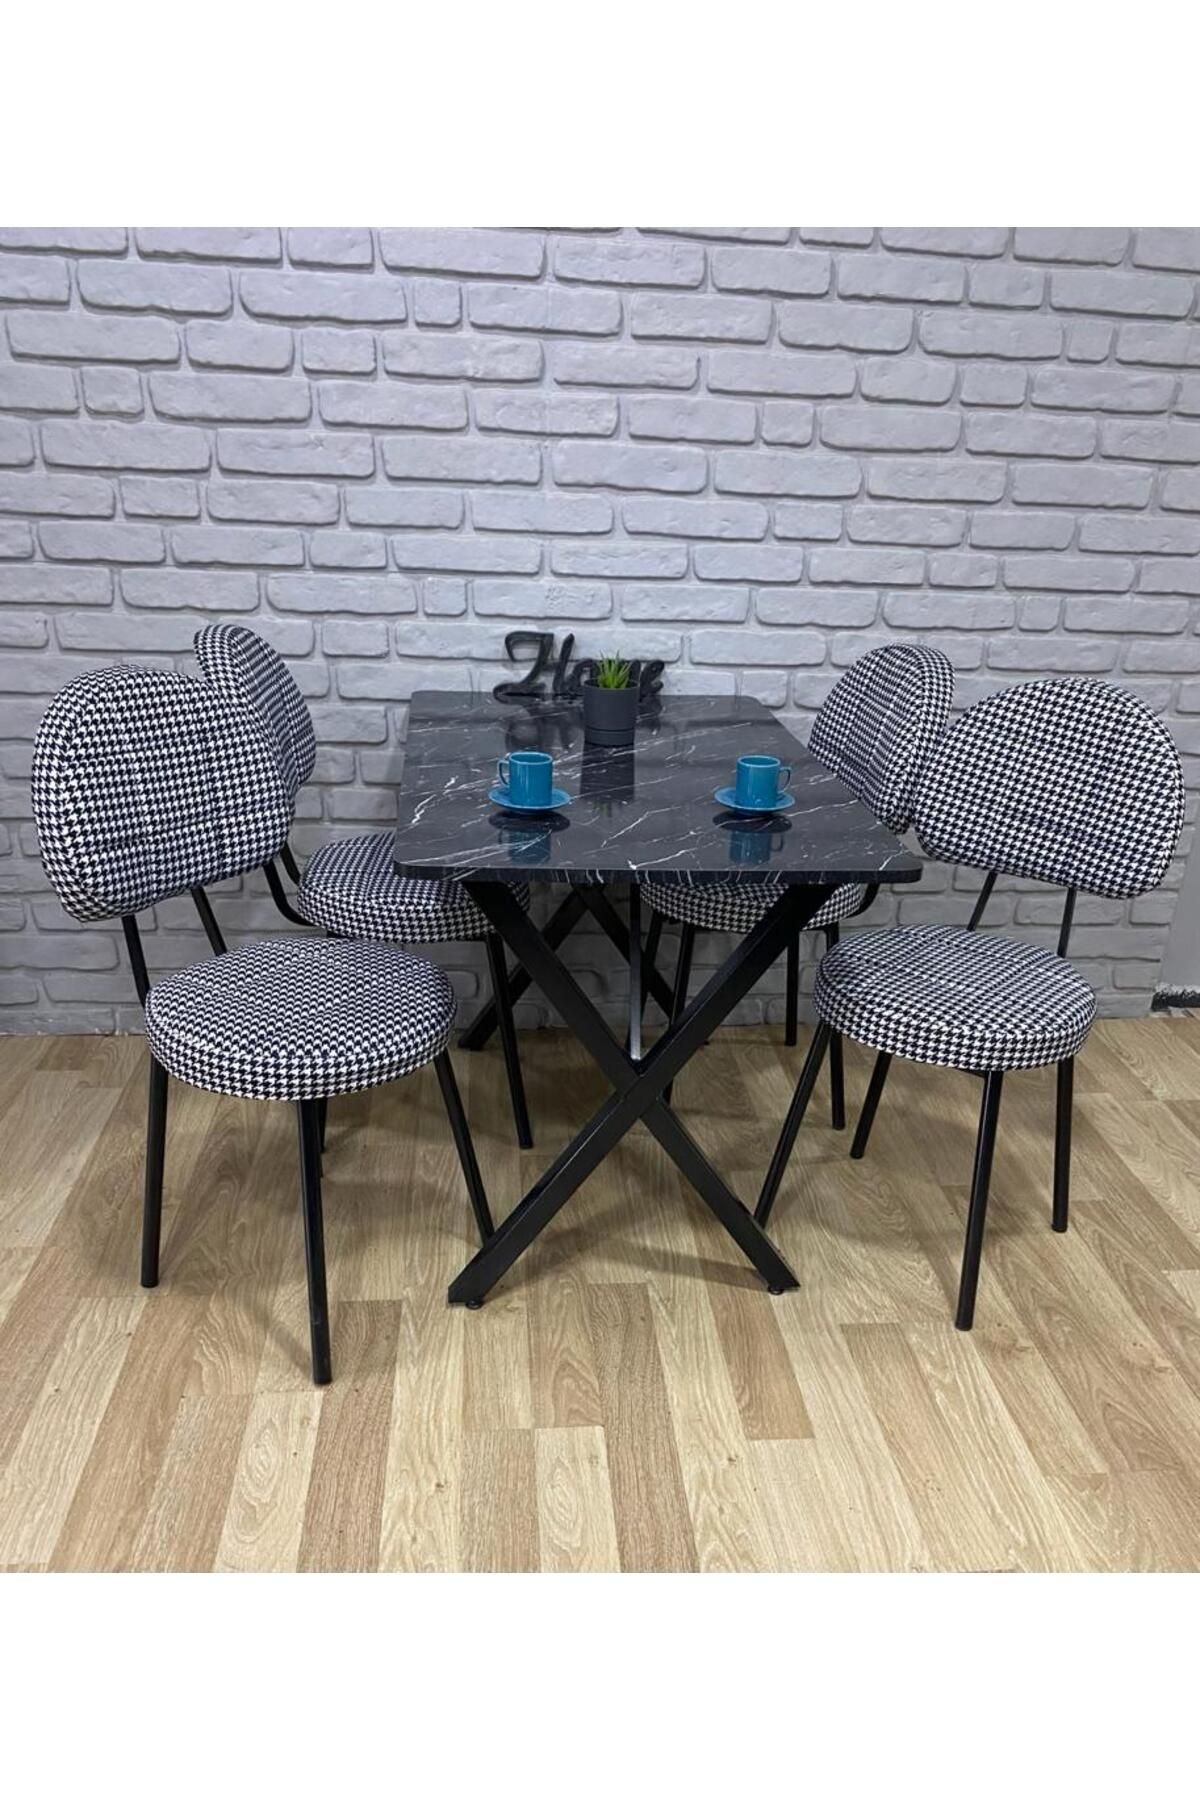 BAMBEDS MOBİLYA Masa Takımı, Yemek Masası, Mutfak Masası, Balkon Masası - 70x110 Siyah Mermer 4 Arkalıklı Sandalye